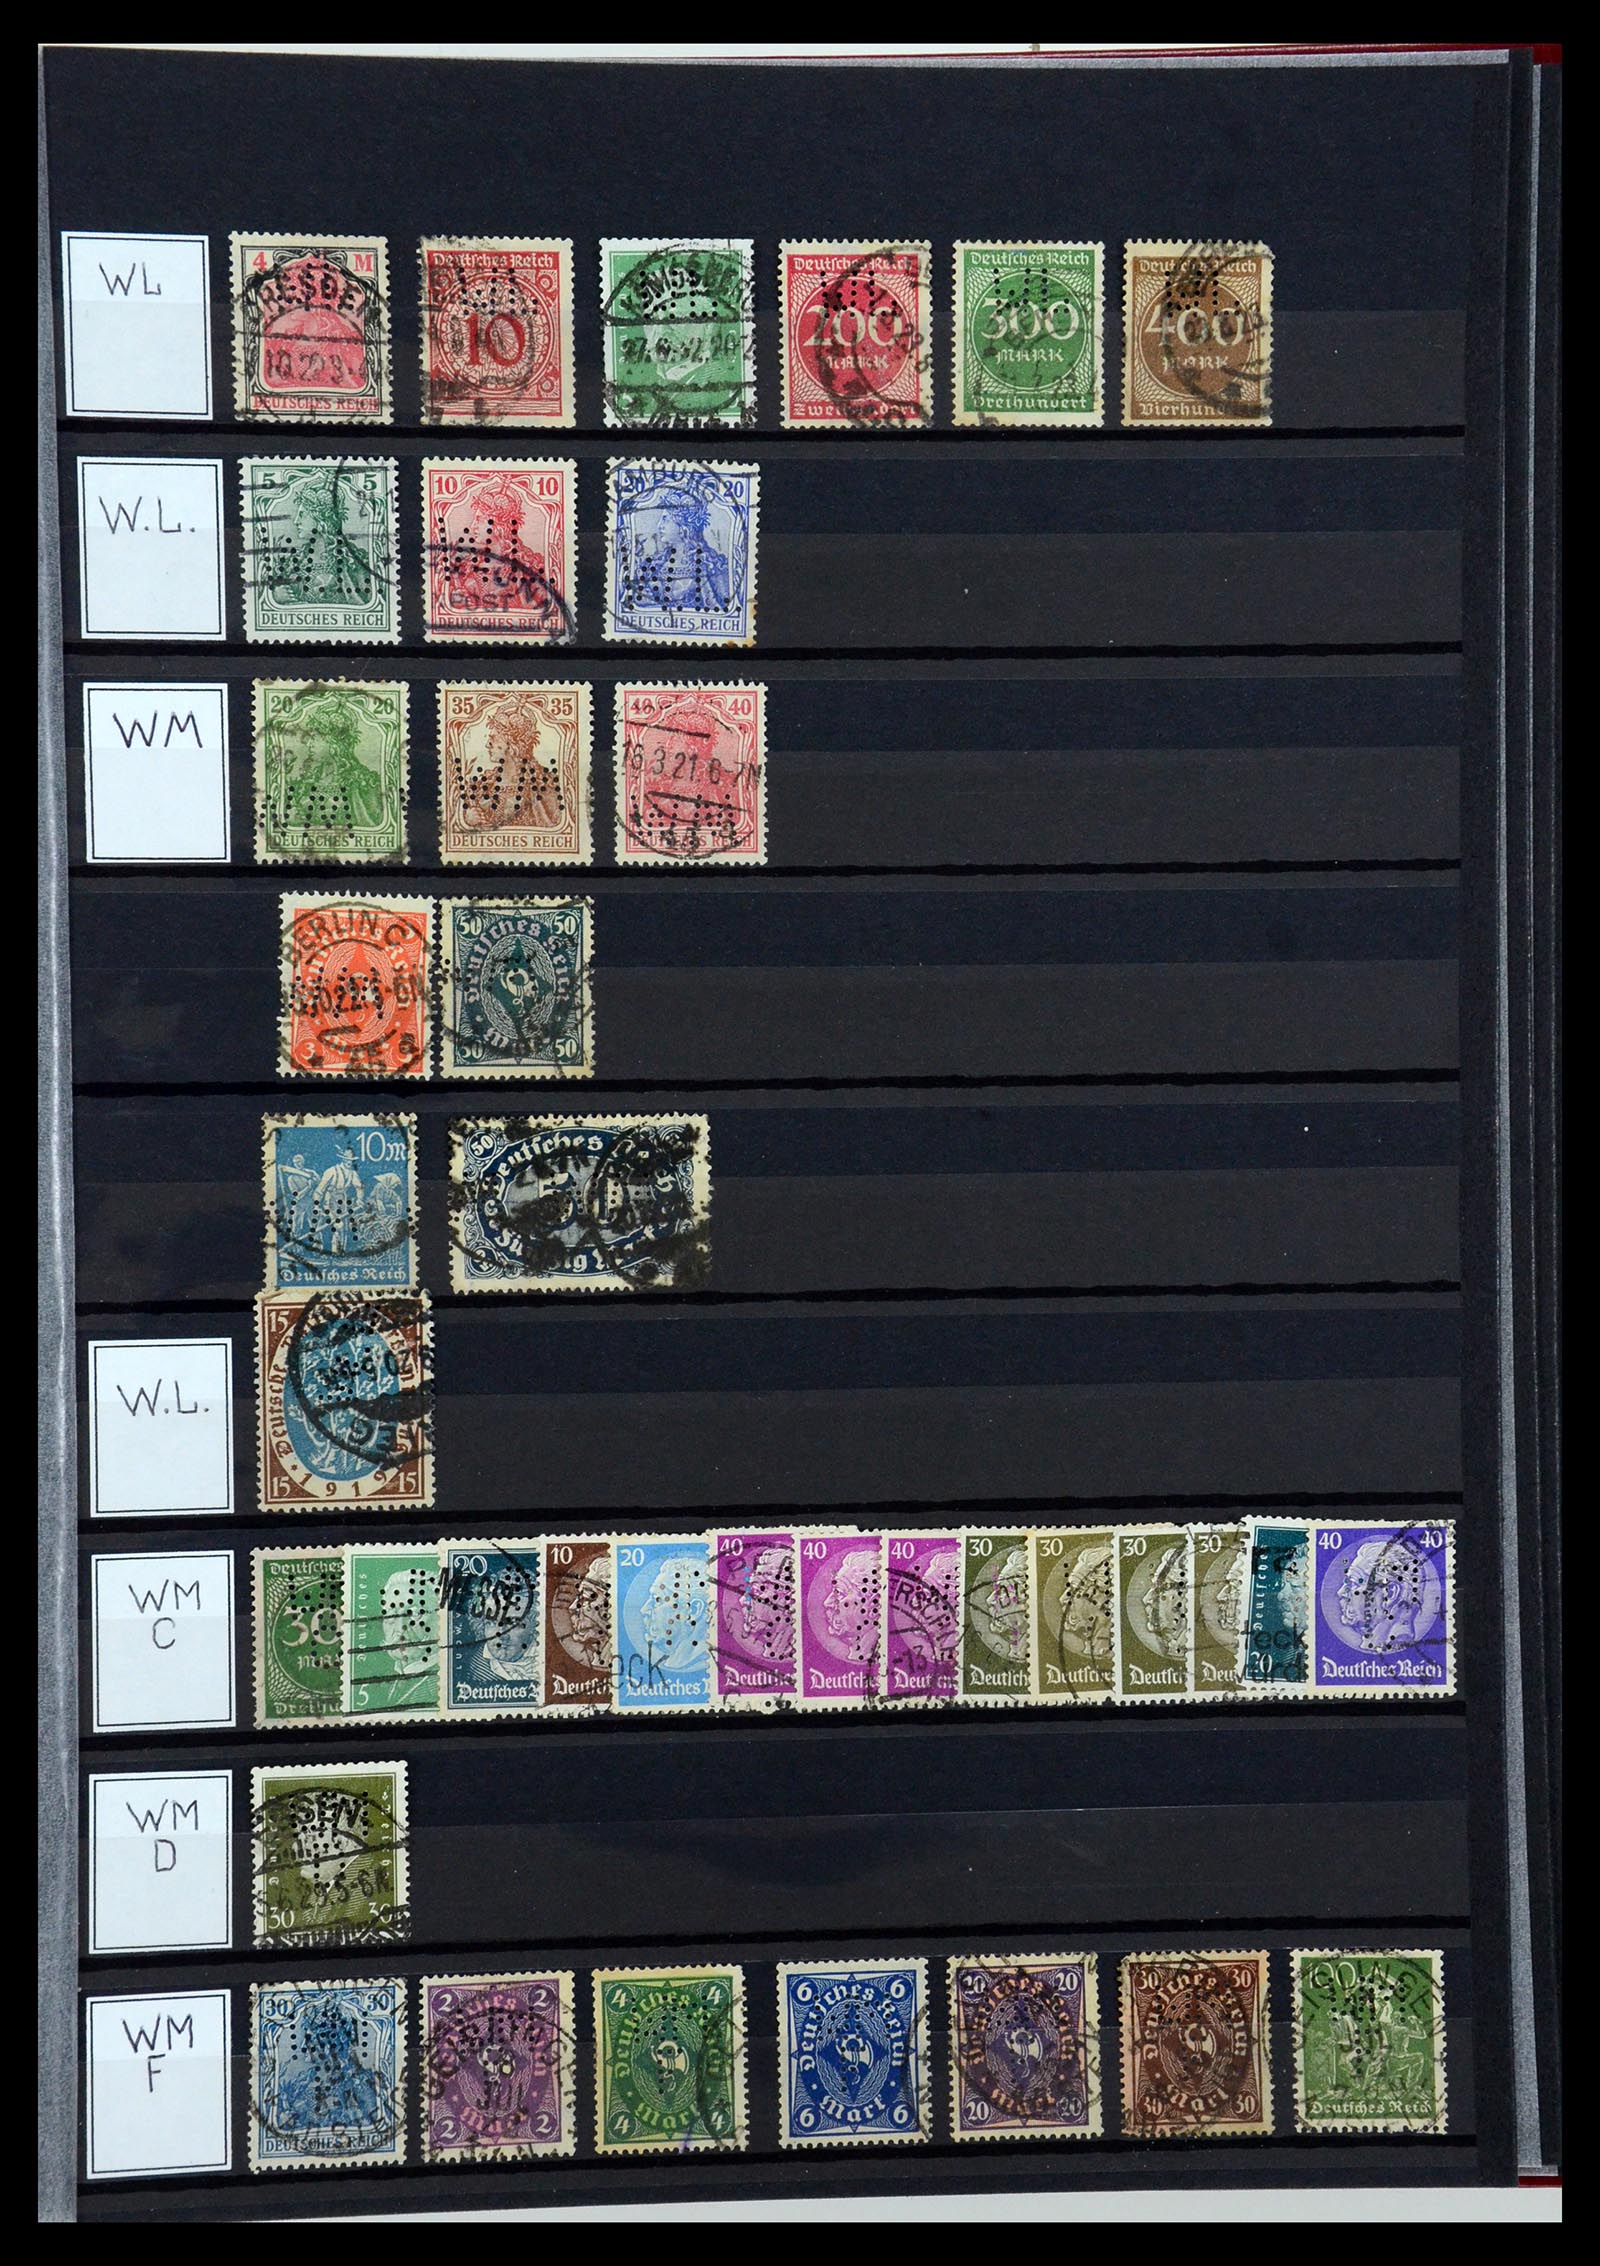 36405 340 - Stamp collection 36405 German Reich perfins 1880-1945.